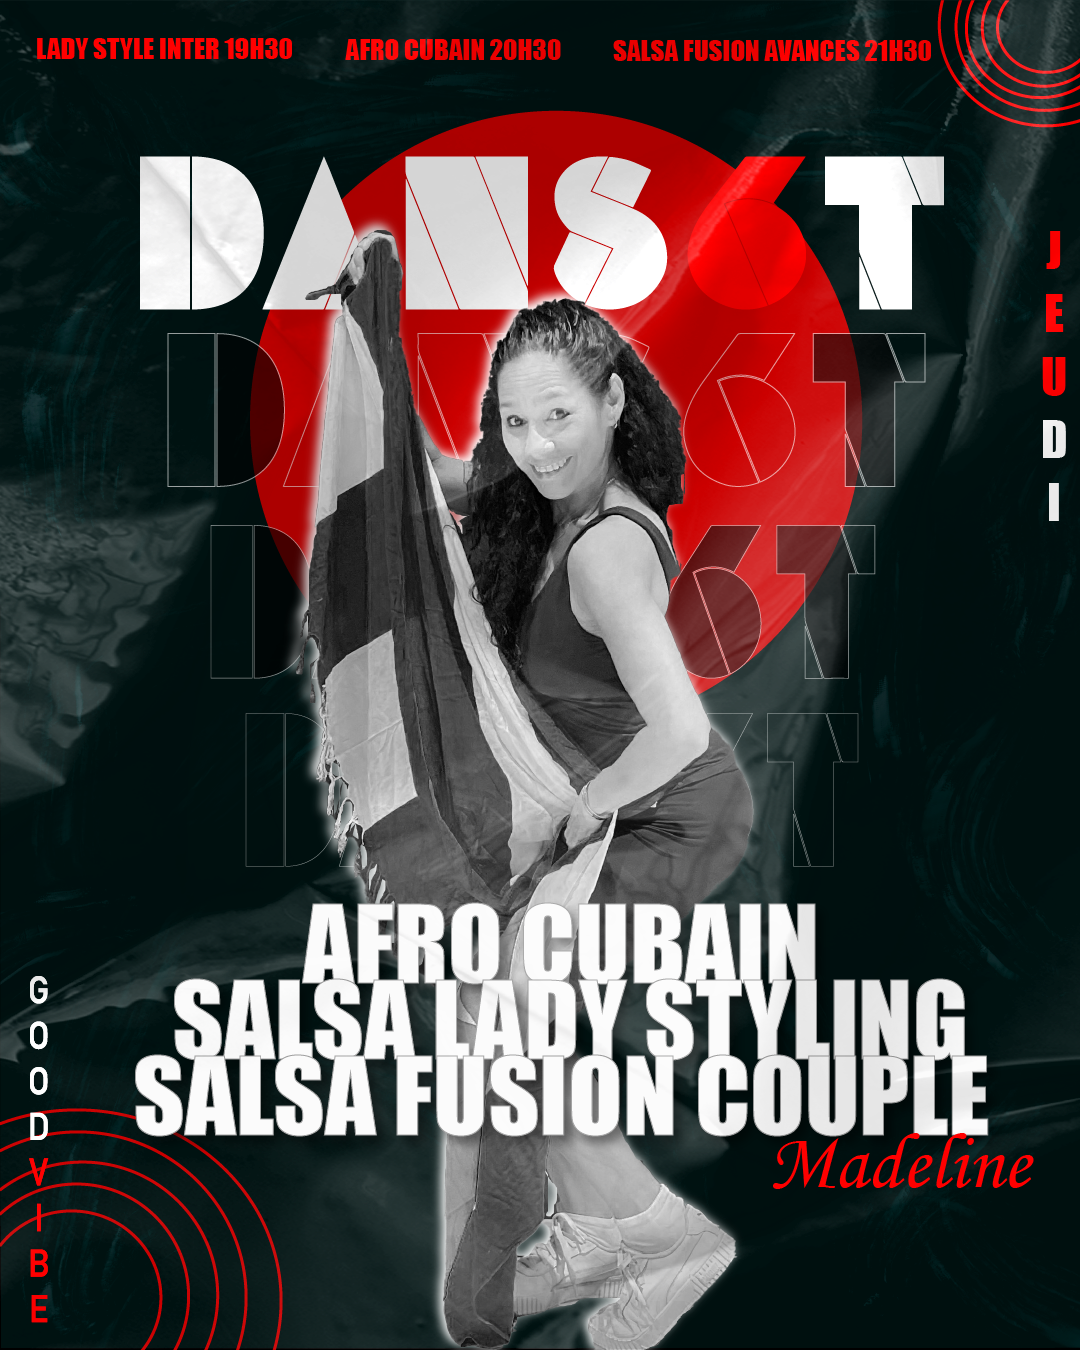 Visuel de Madeline pour les cours Salsa fusion, salsa ladies style et afro cubain à Dans6T